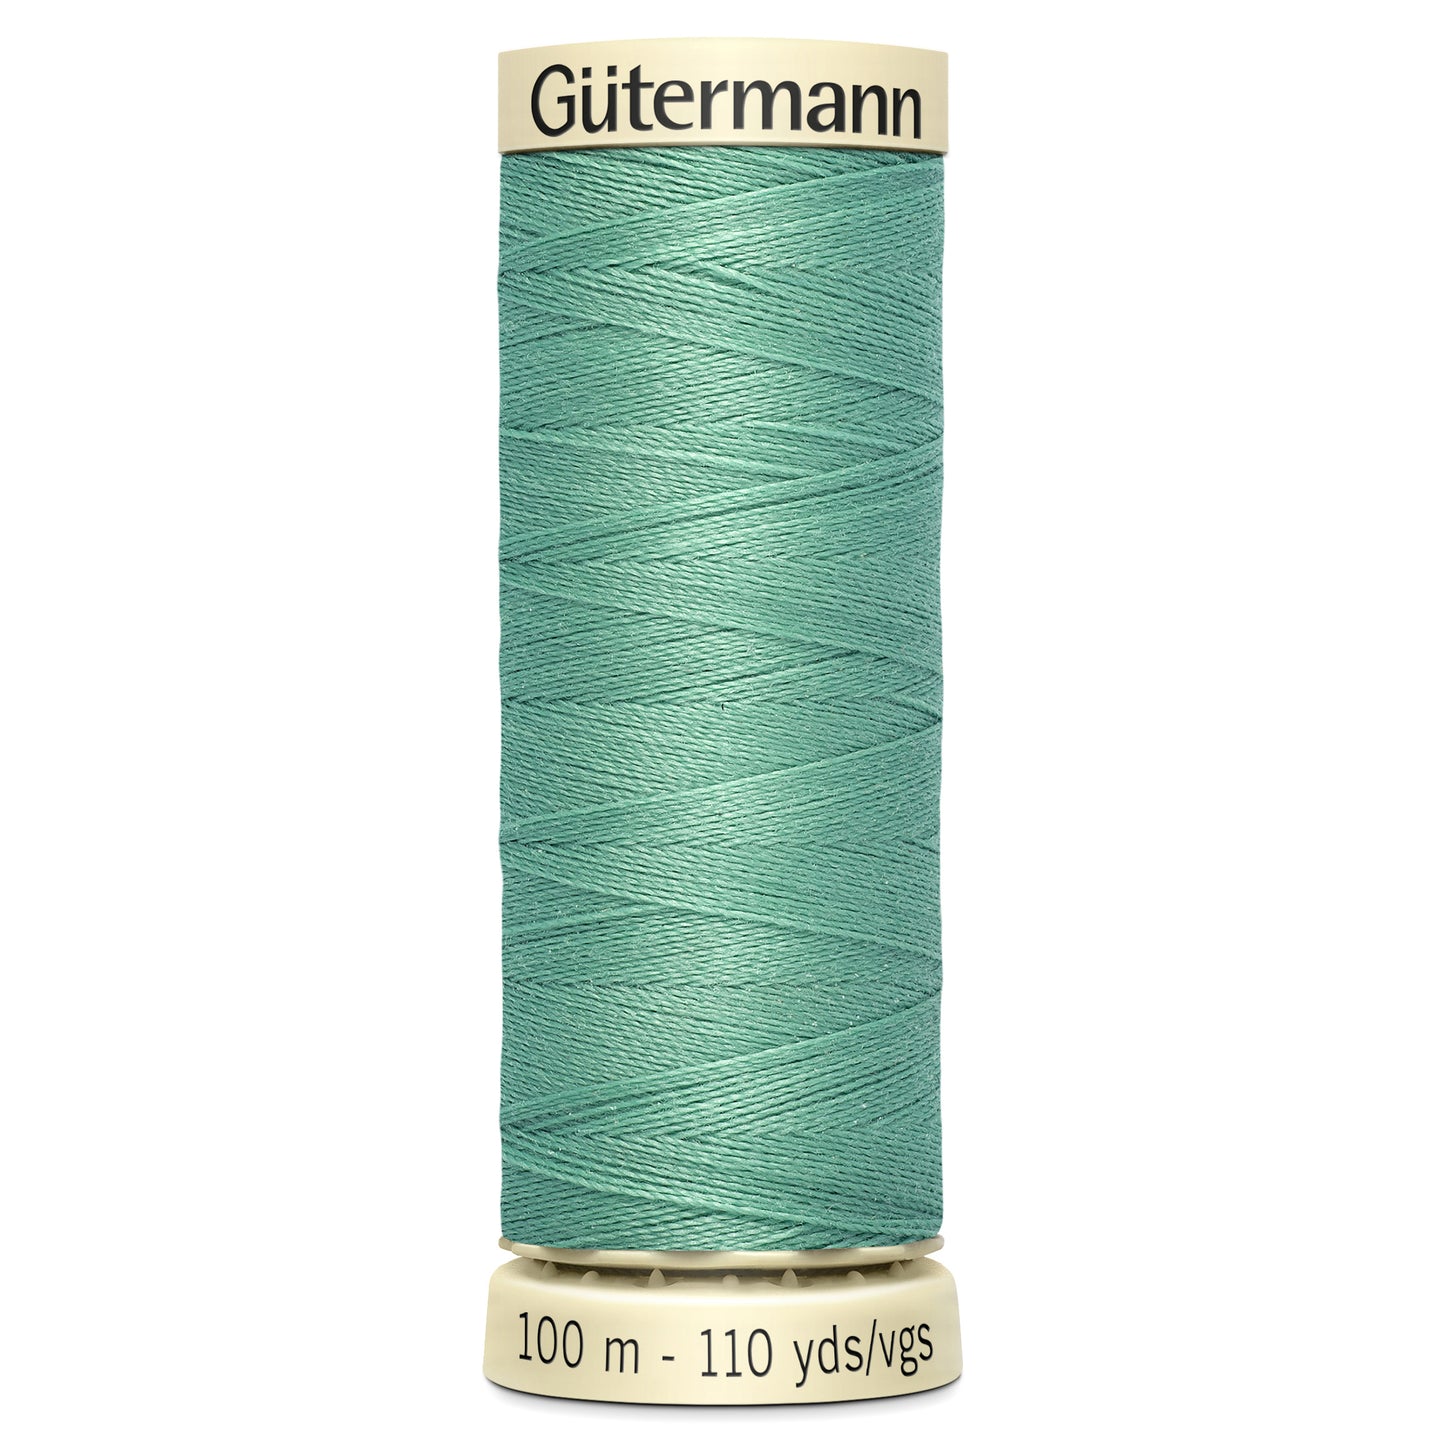 Shade 100 - Sew-All Thread: 100m - Gutermann